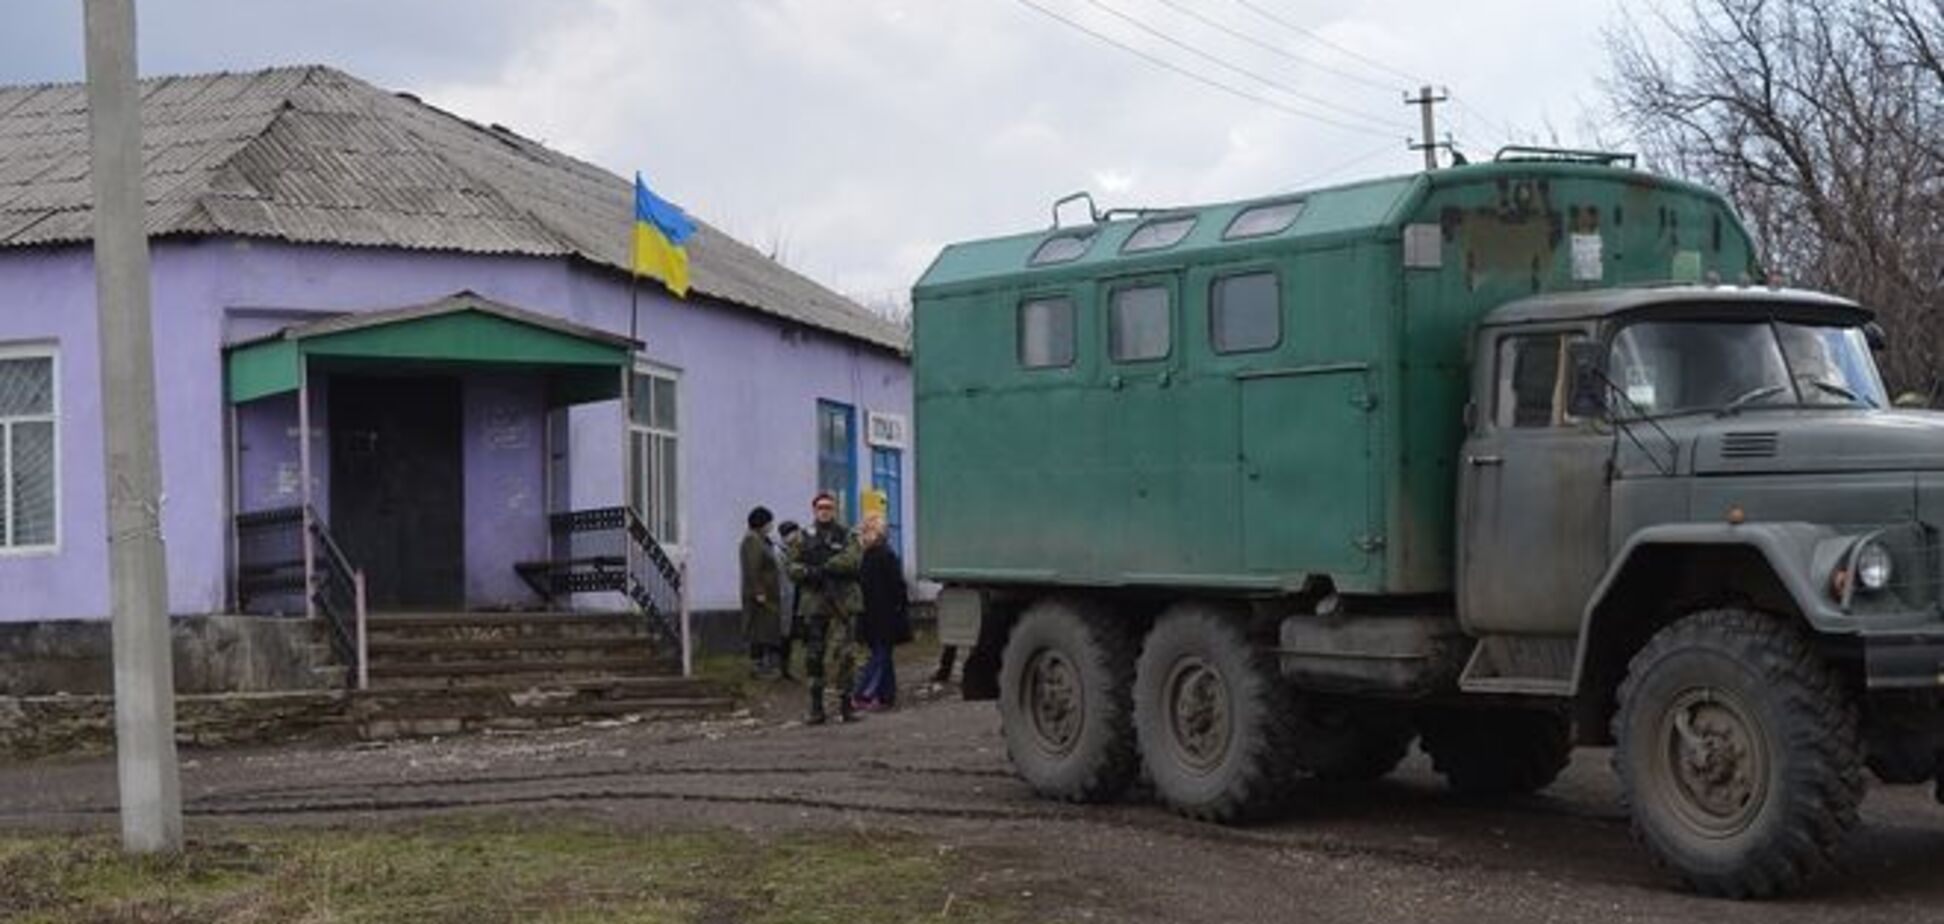 Над еще одним селом в Луганской области подняли флаг Украины. Фотофакт